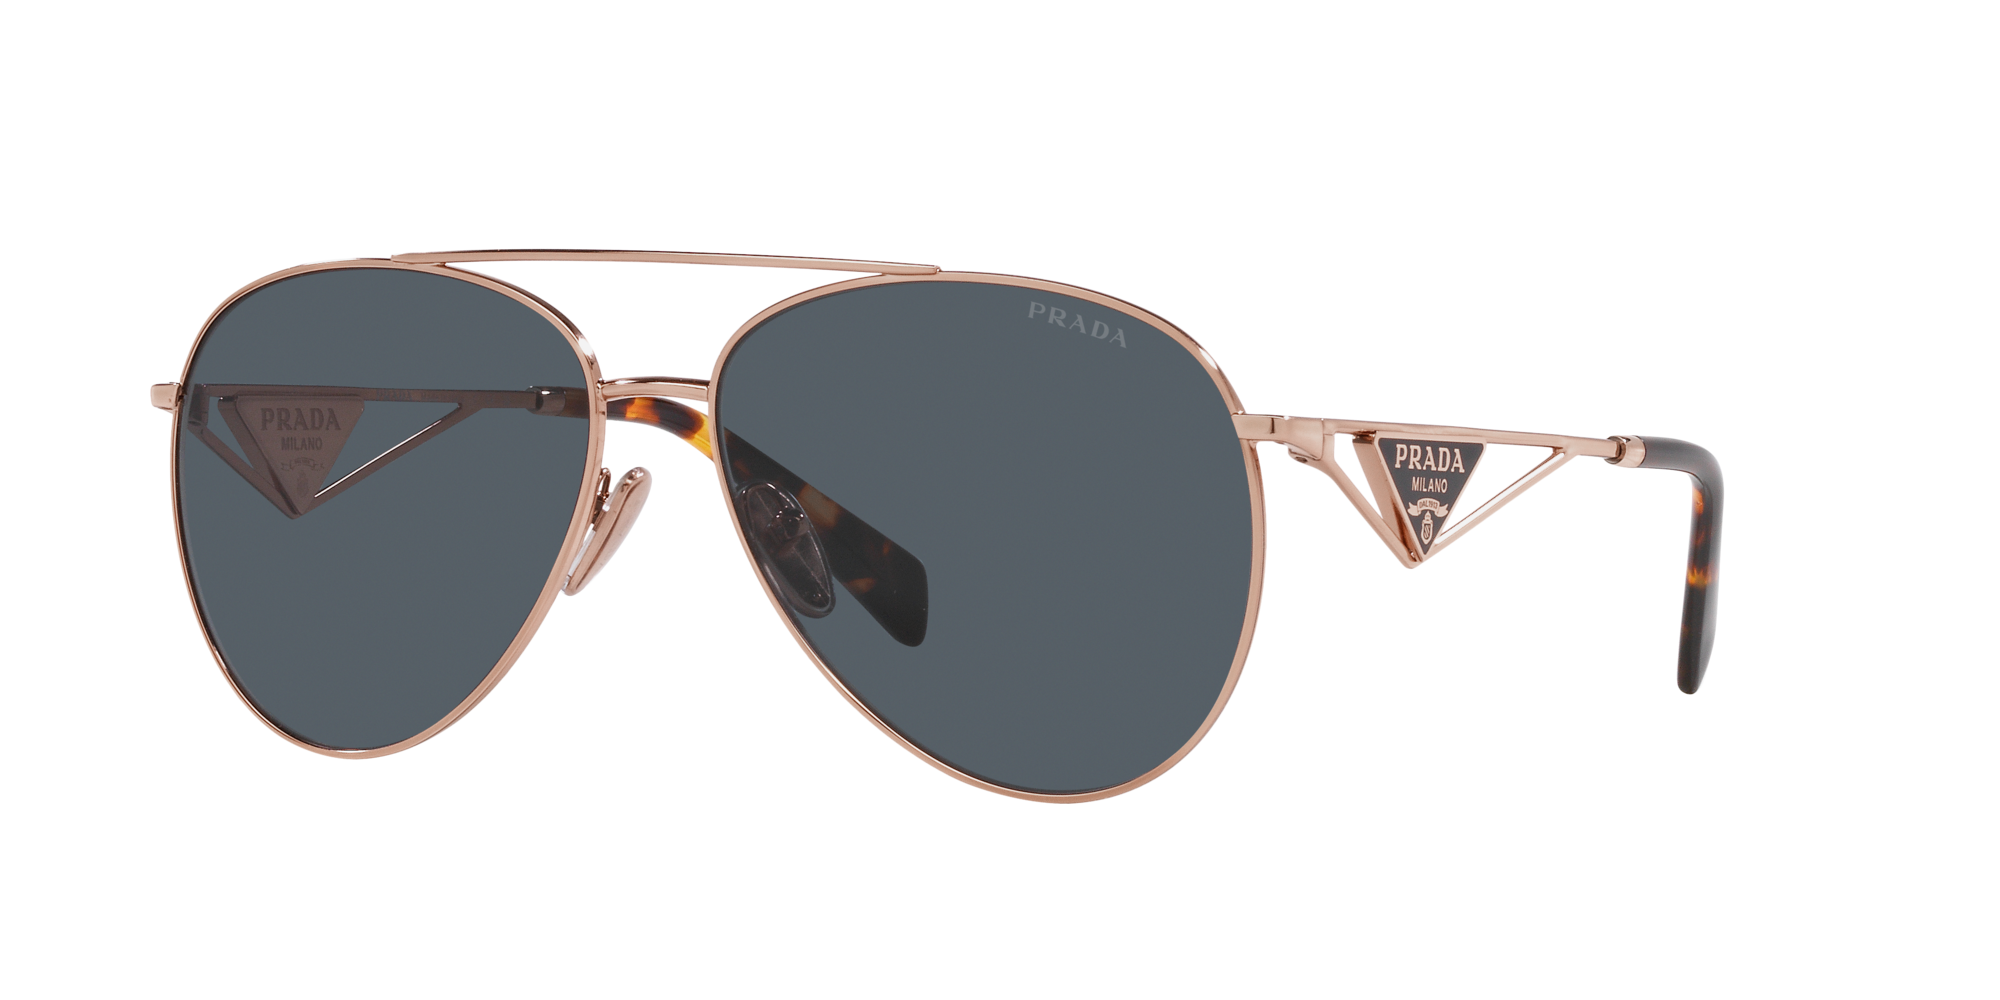 Prada Sunglasses Polarized Gunmetal Grey Metal Pilot PS54TS SPS 54T 5AV-5Z1  | eBay